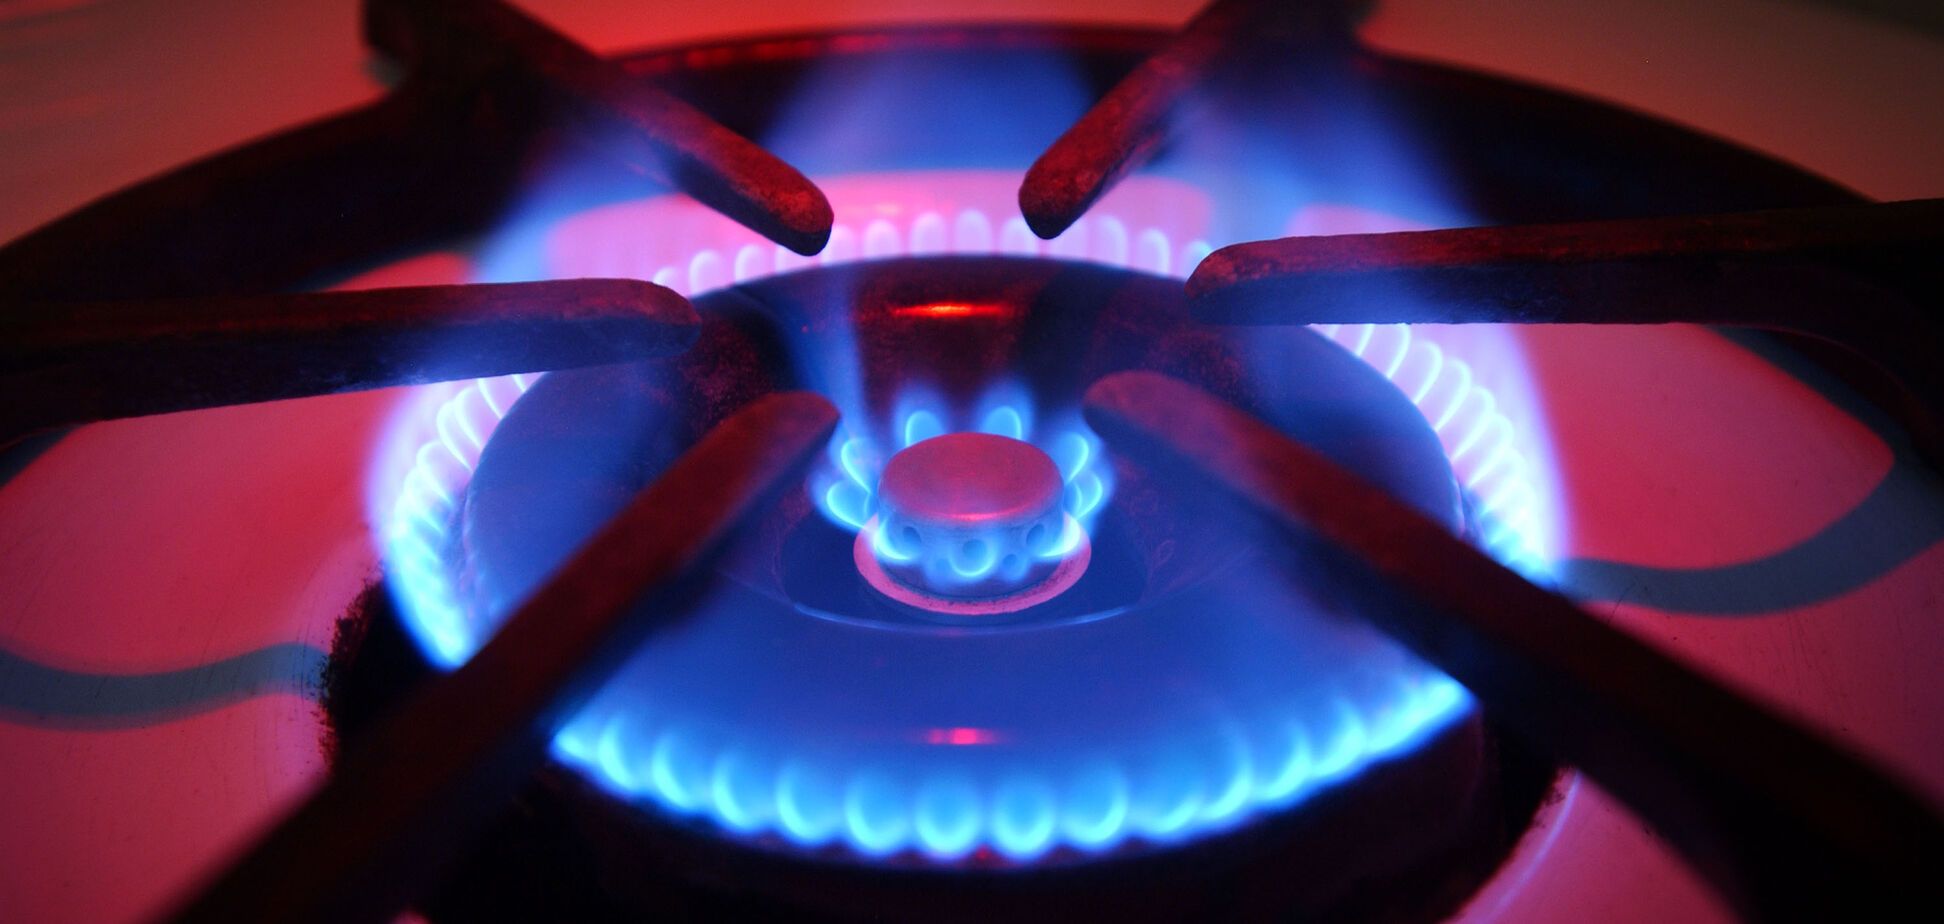 Повышение цен на газ в Украине: Гройсман рассказал о переговорах с МВФ